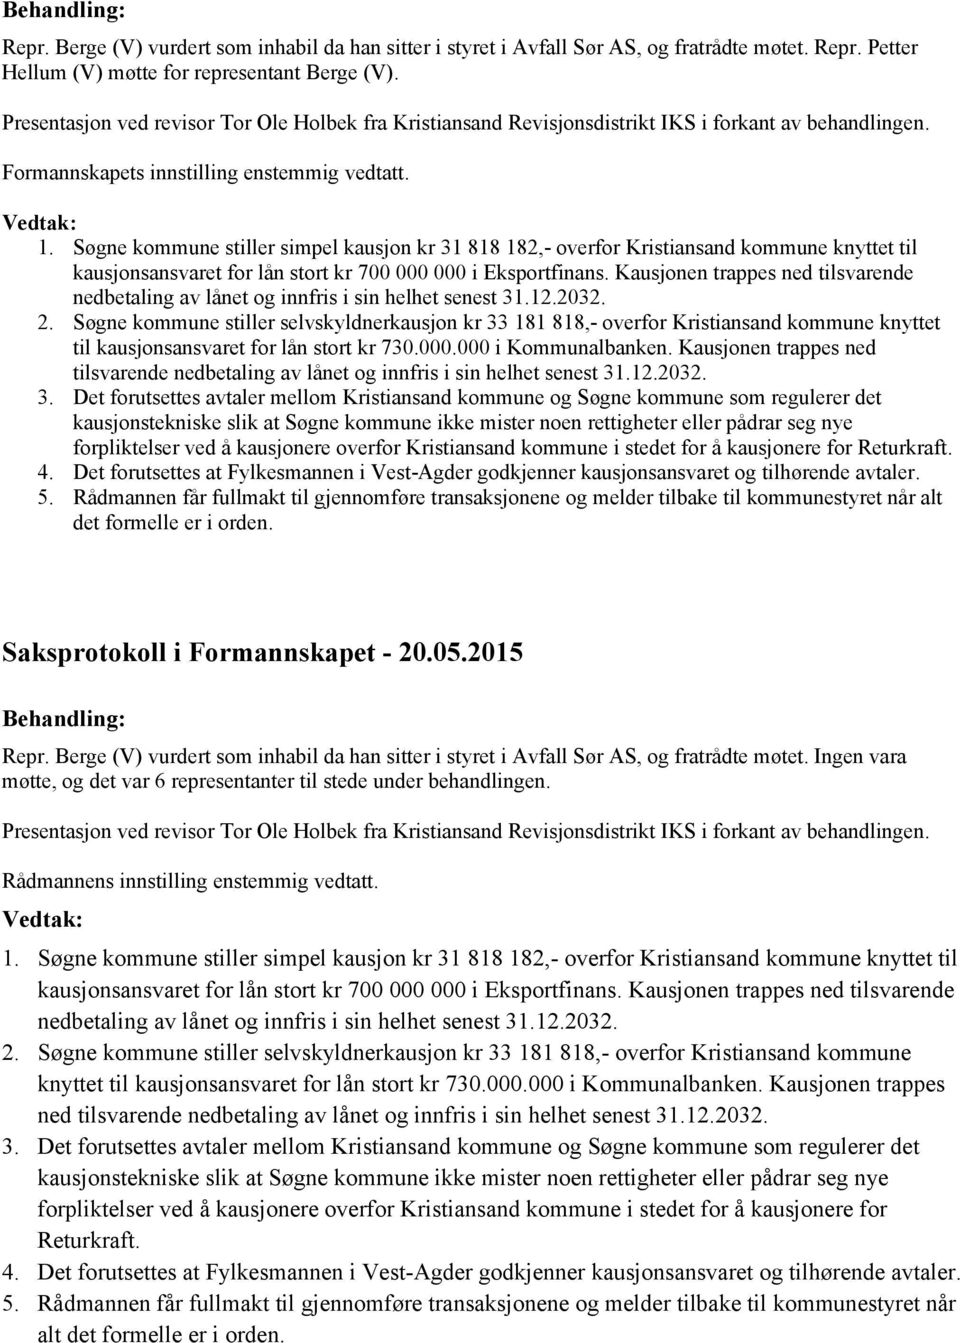 Søgne kommune stiller simpel kausjon kr 31 818 182,- overfor Kristiansand kommune knyttet til kausjonsansvaret for lån stort kr 700 000 000 i Eksportfinans.